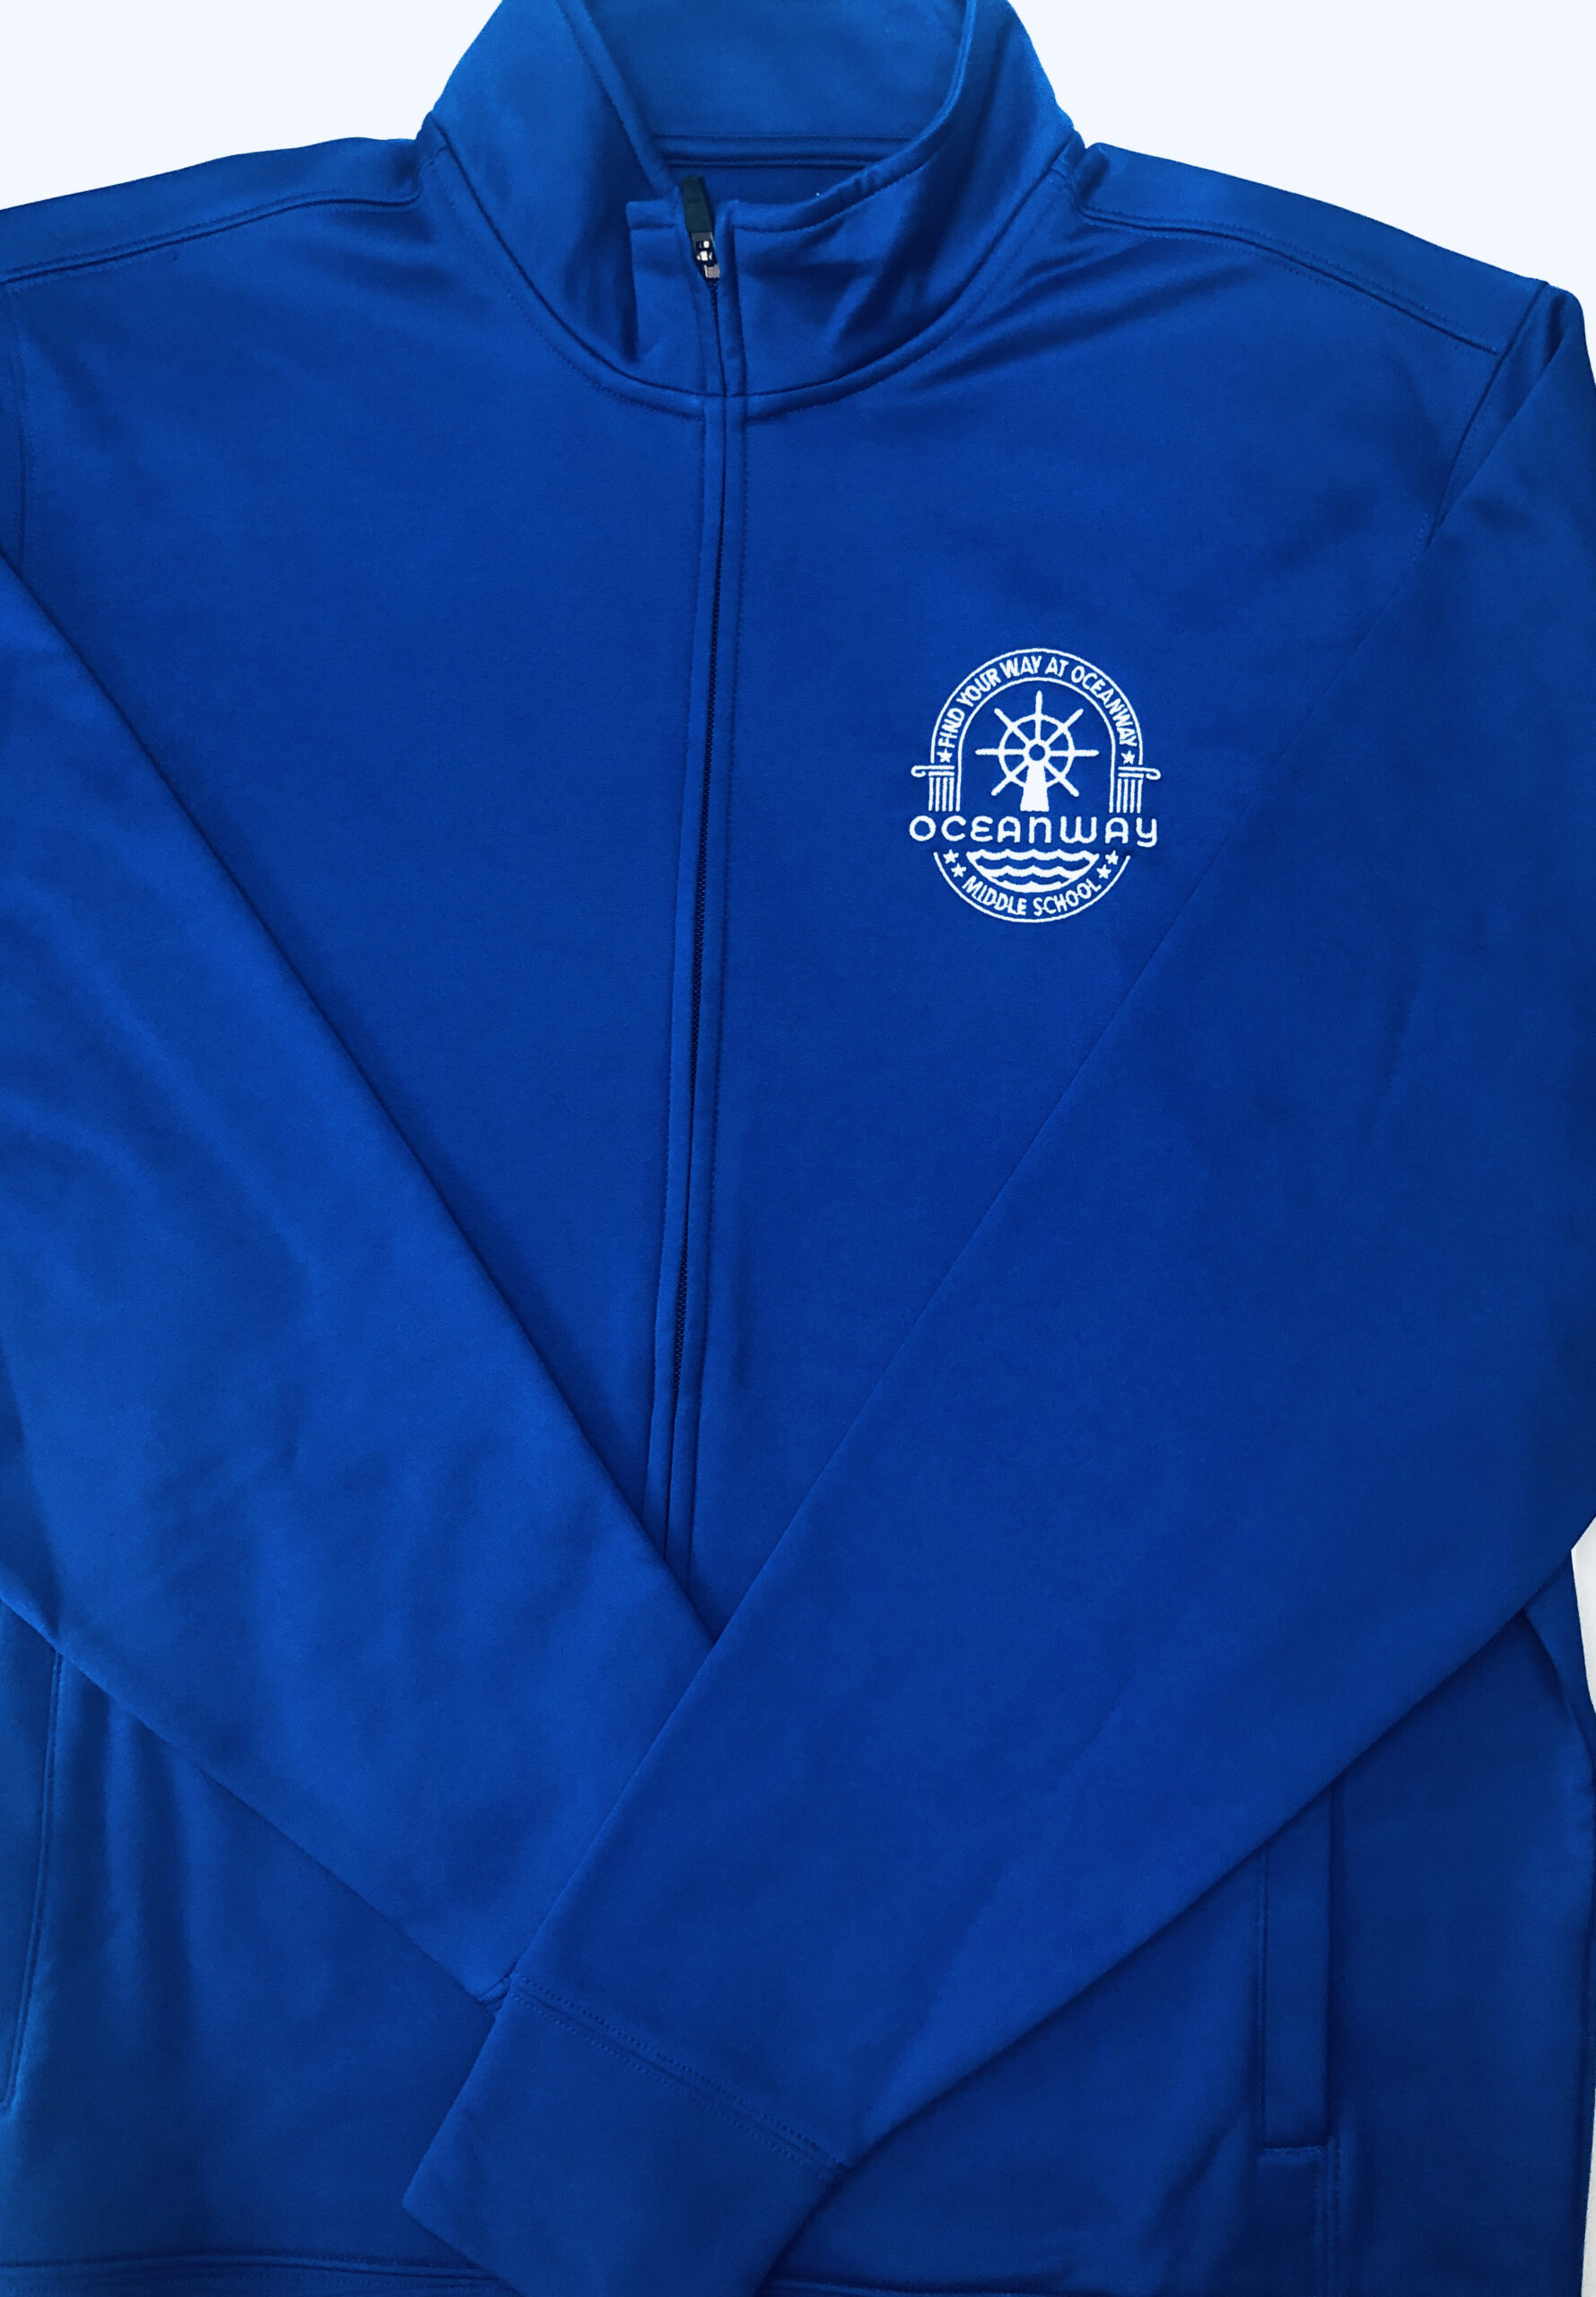 Oceanway Middle School YOUTH Sport-Wick Fleece Full Zip Jacket with ...